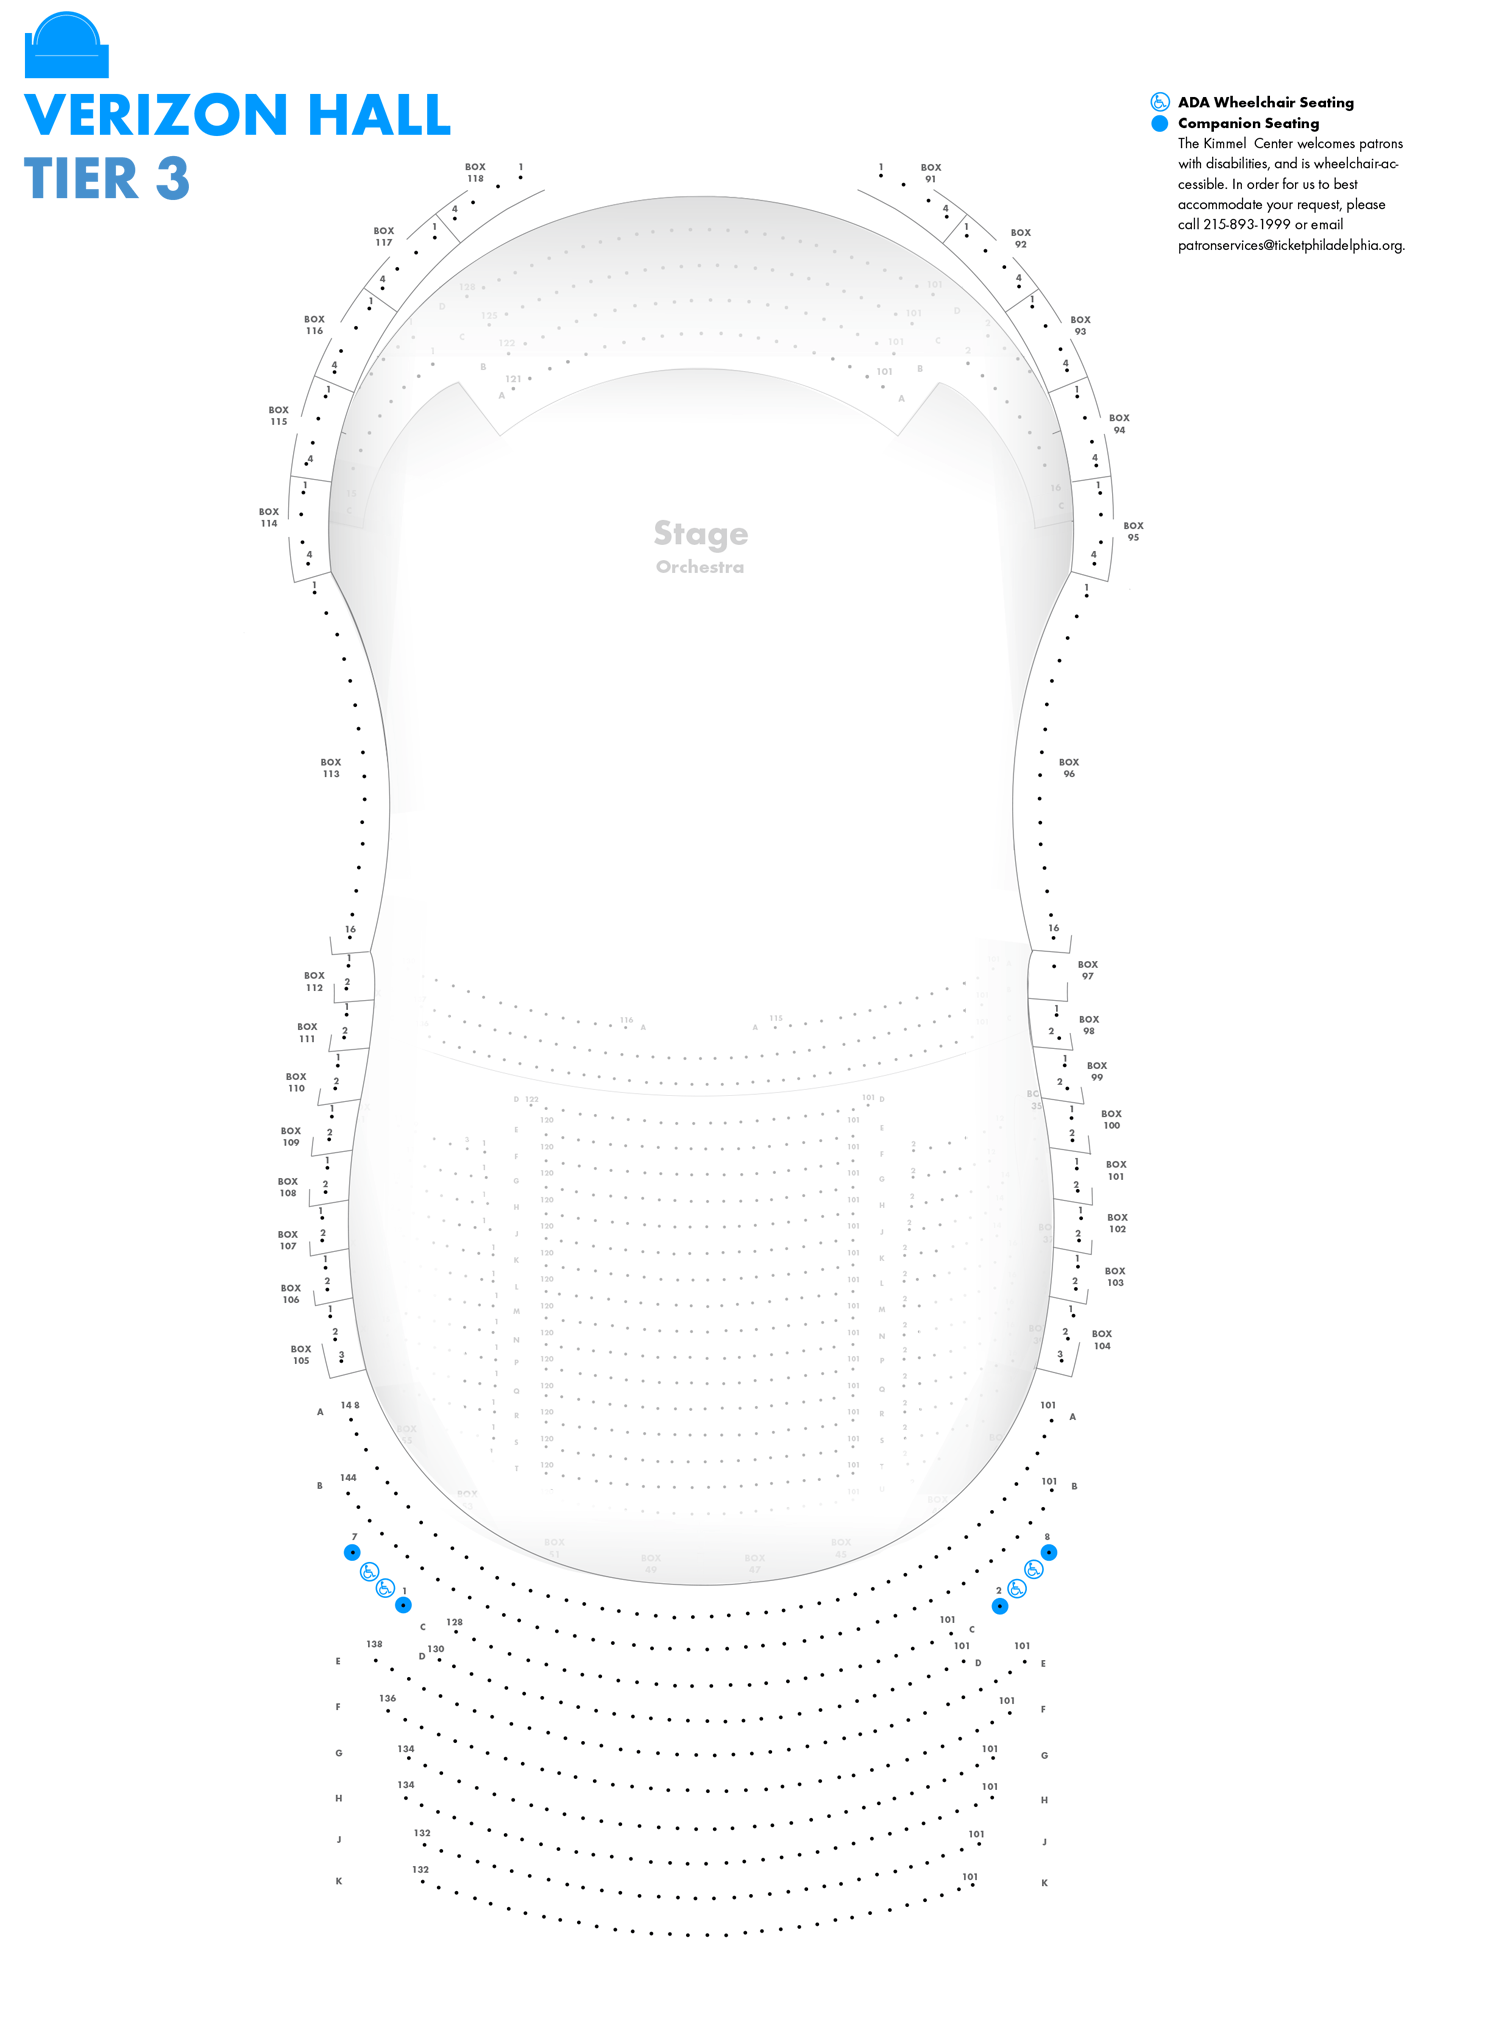 Verizon Hall Virtual Seating Chart